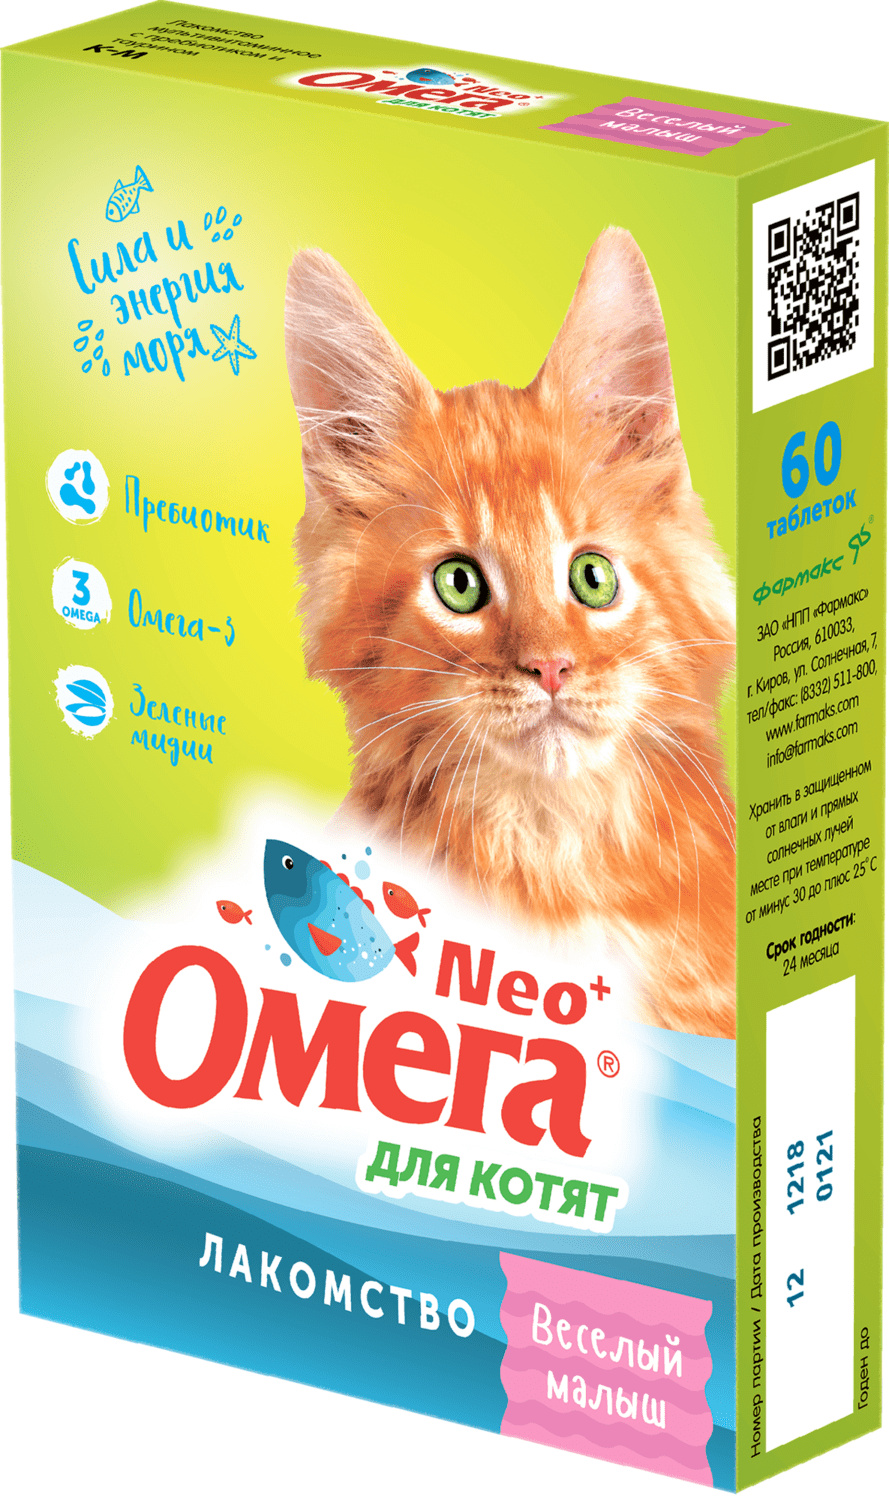 Фармакс Фармакс мультивитаминное лакомство Омега Neo+ Веселый малыш с пребиотиком и таурином для котят (60 г) лакомство веселый малыш для котят с пребиотиком и таурином омега nео таблетки 60шт